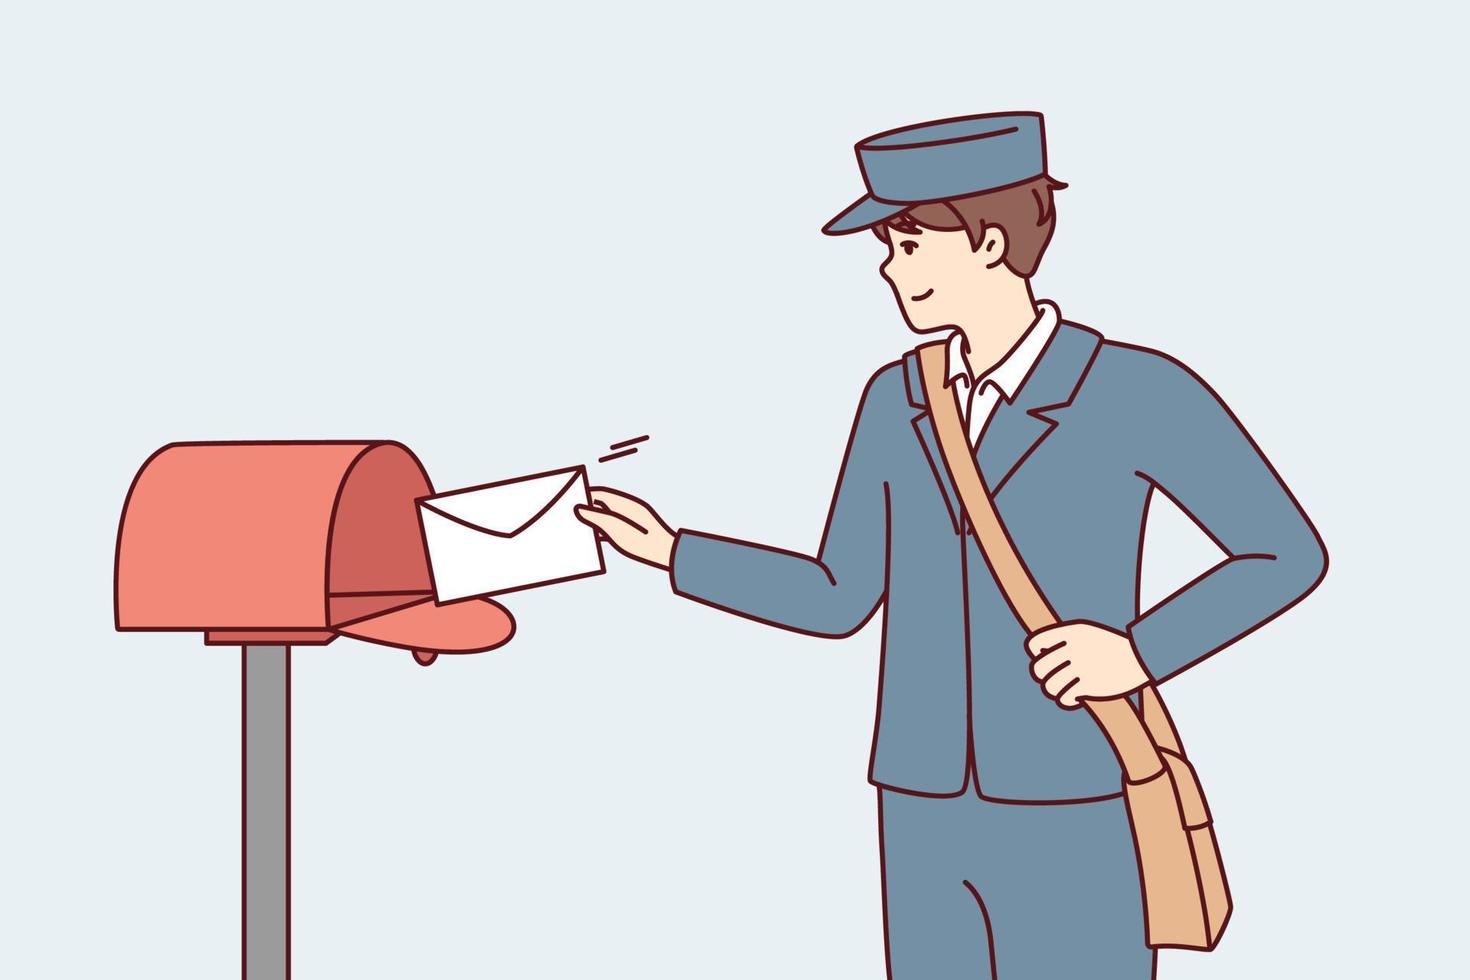 Mann in Postbotenuniform wirft Papierbrief in Metallbriefkasten auf der Straße. guy liefert frische Post mit Benachrichtigungen von Regierungsbehörden oder Nachrichten von Freunden. flache vektorillustration vektor